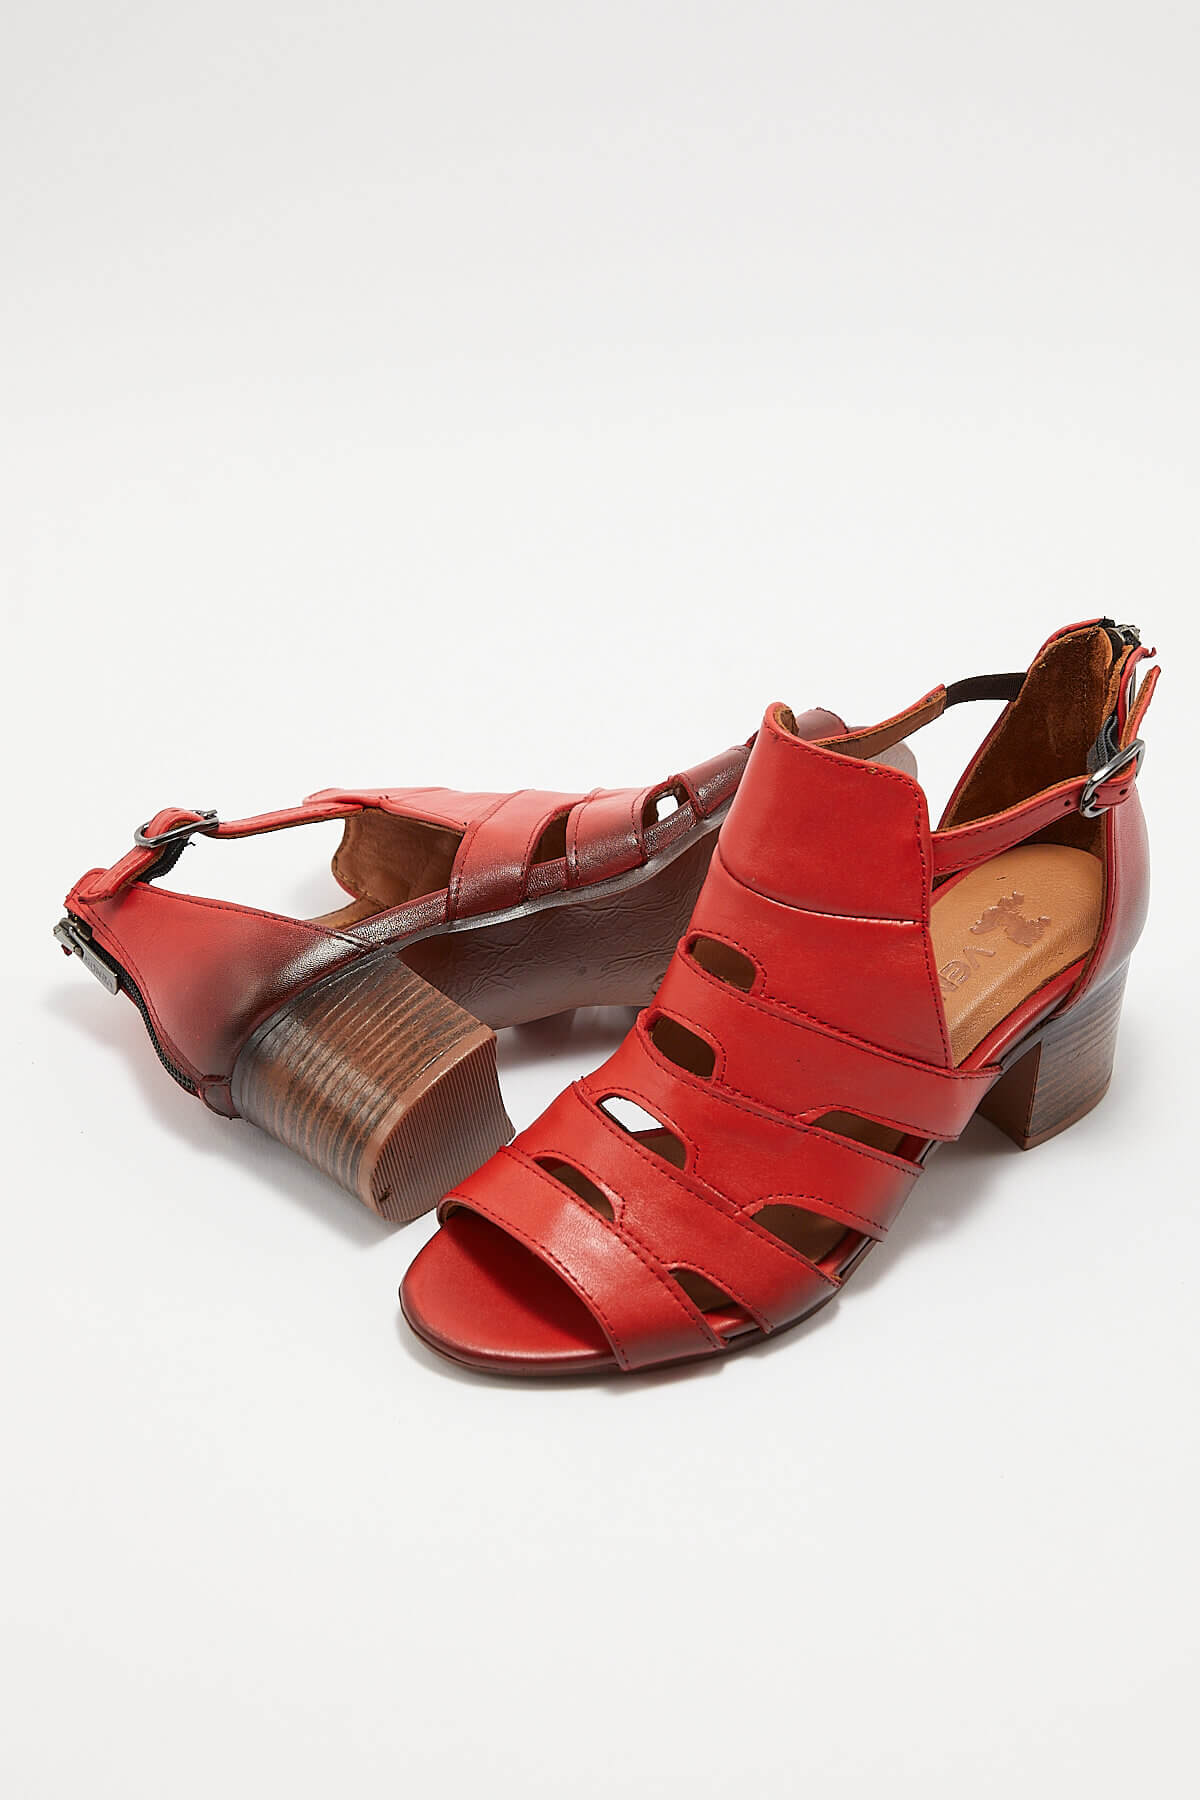 Kadın Topuklu Deri Sandalet Kırmızı 1857211Y